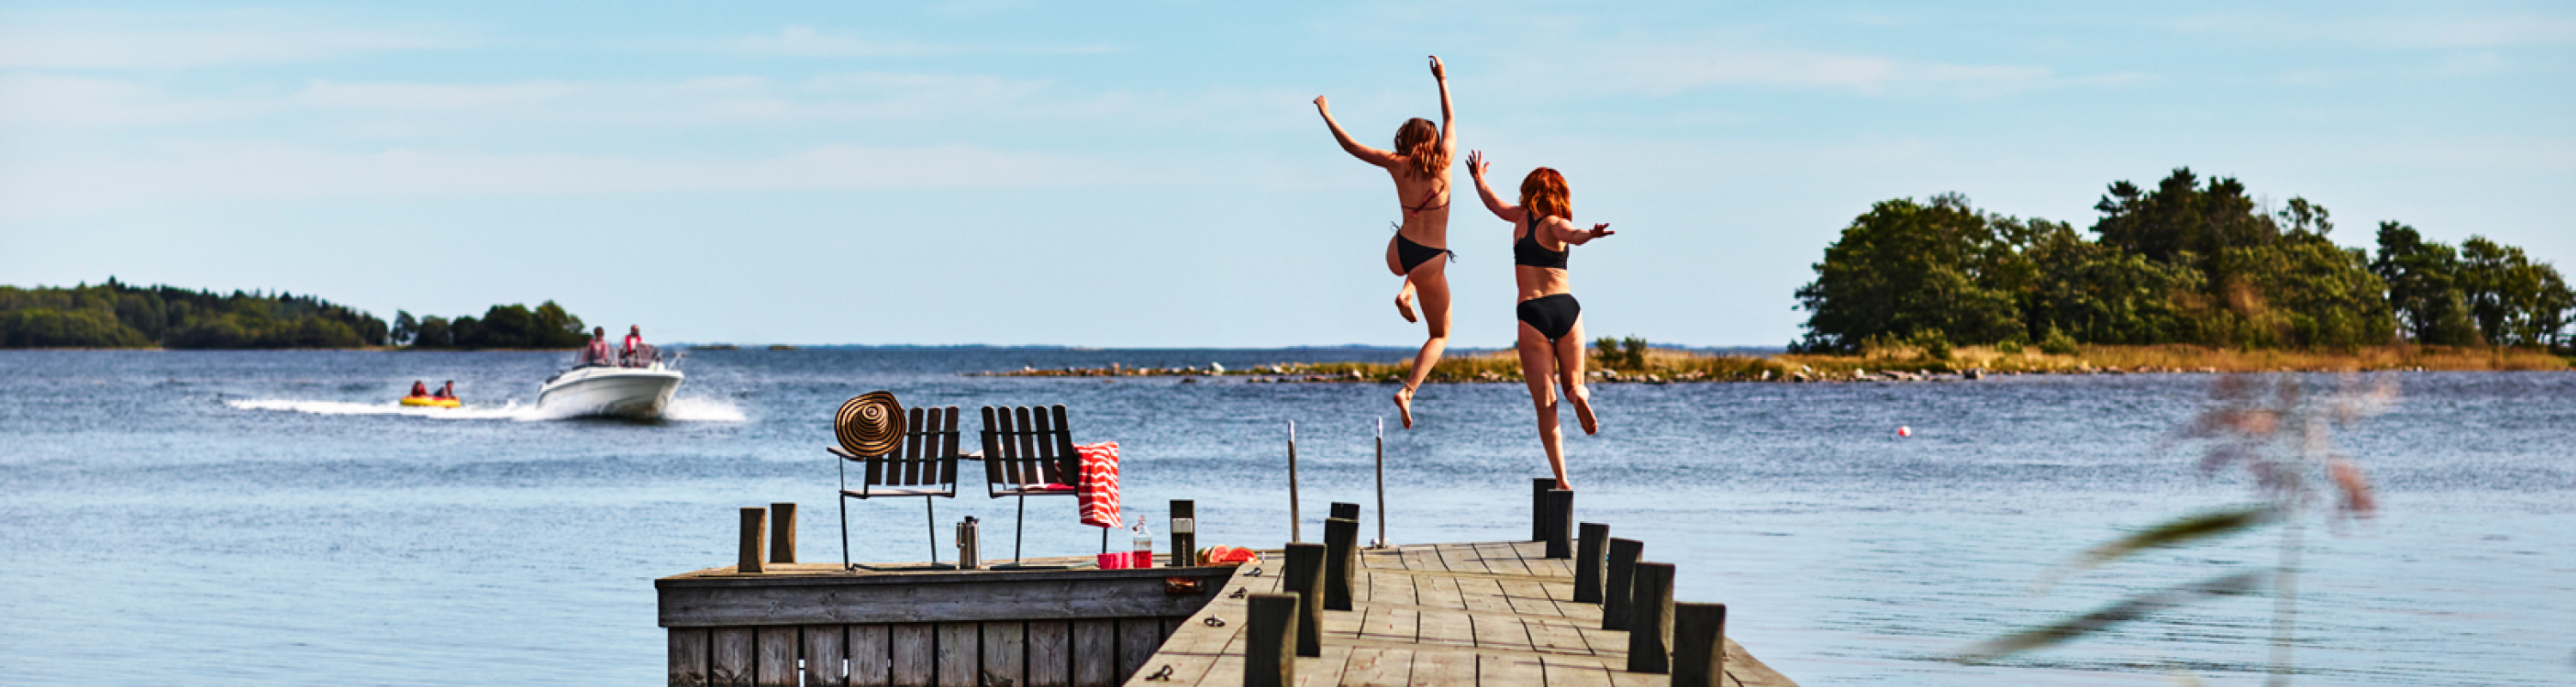 Allt för sjön Båtmässan - en bild på en badbrygga med två personer som hoppar i vattnet. En motorbåt och en udde syns även i bild. 